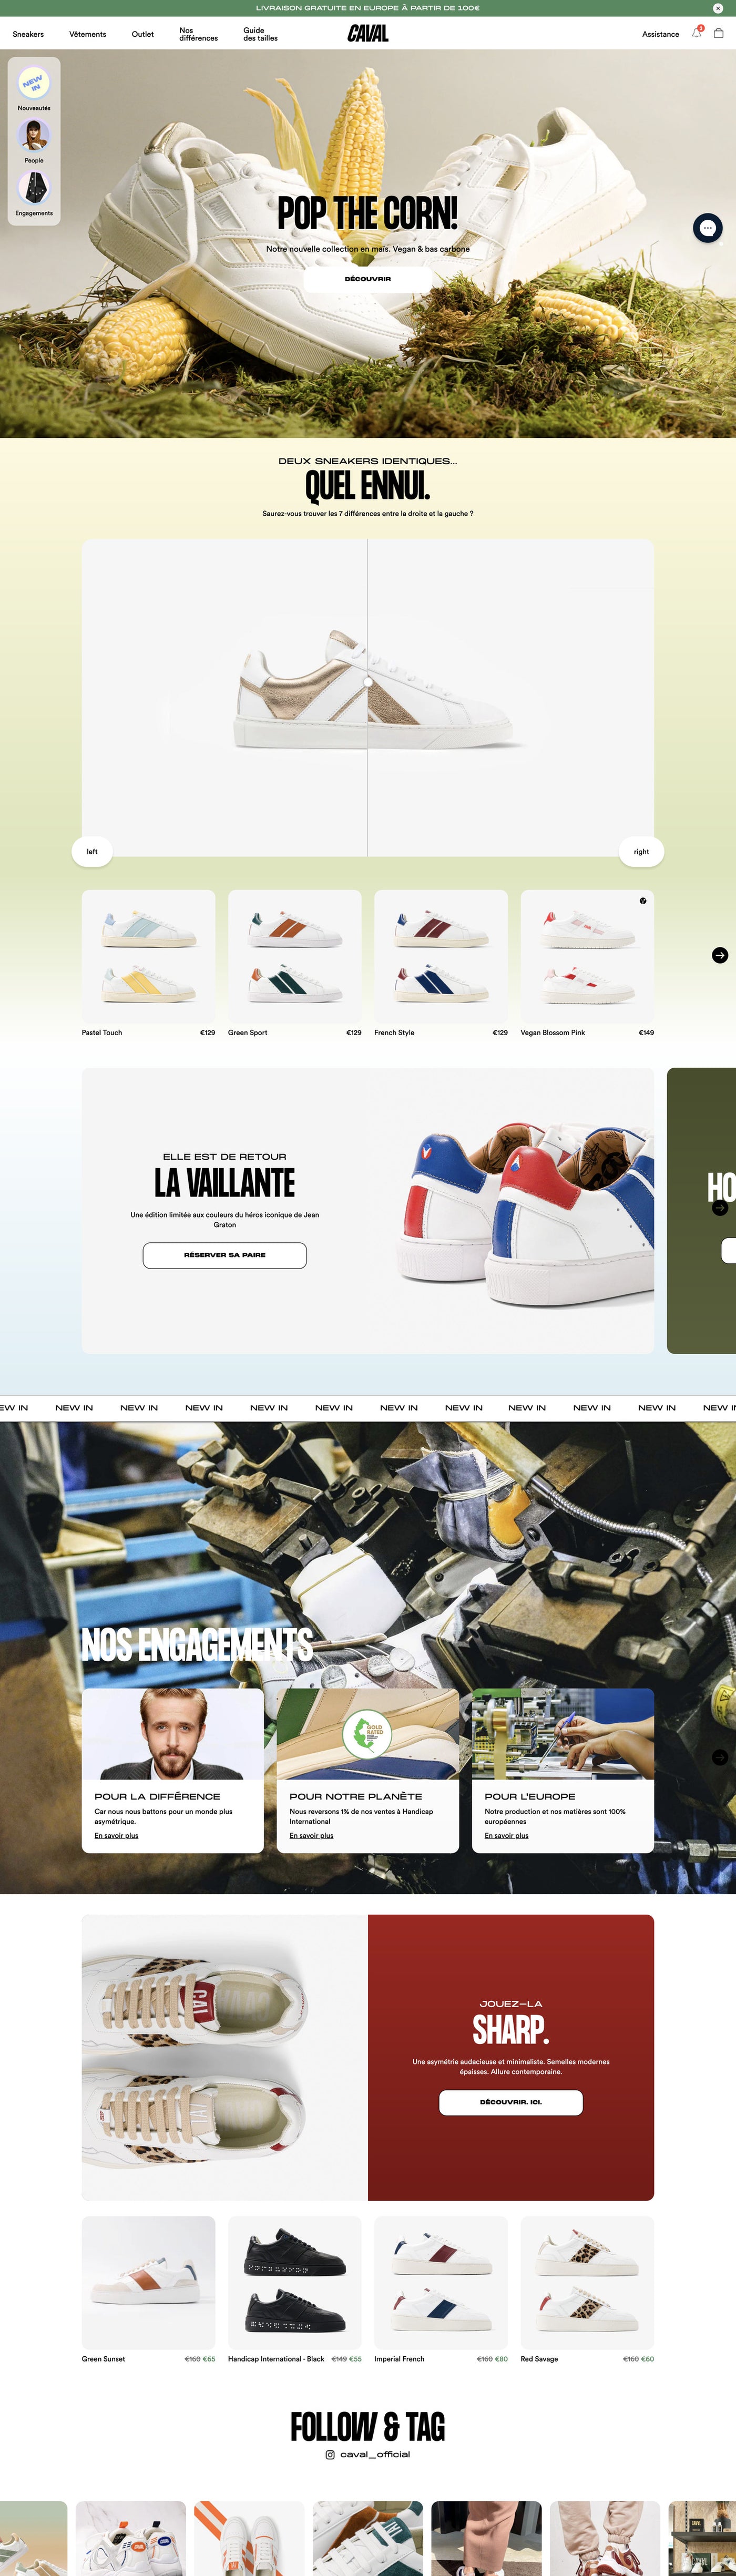 Caval - Homepage - Desktop